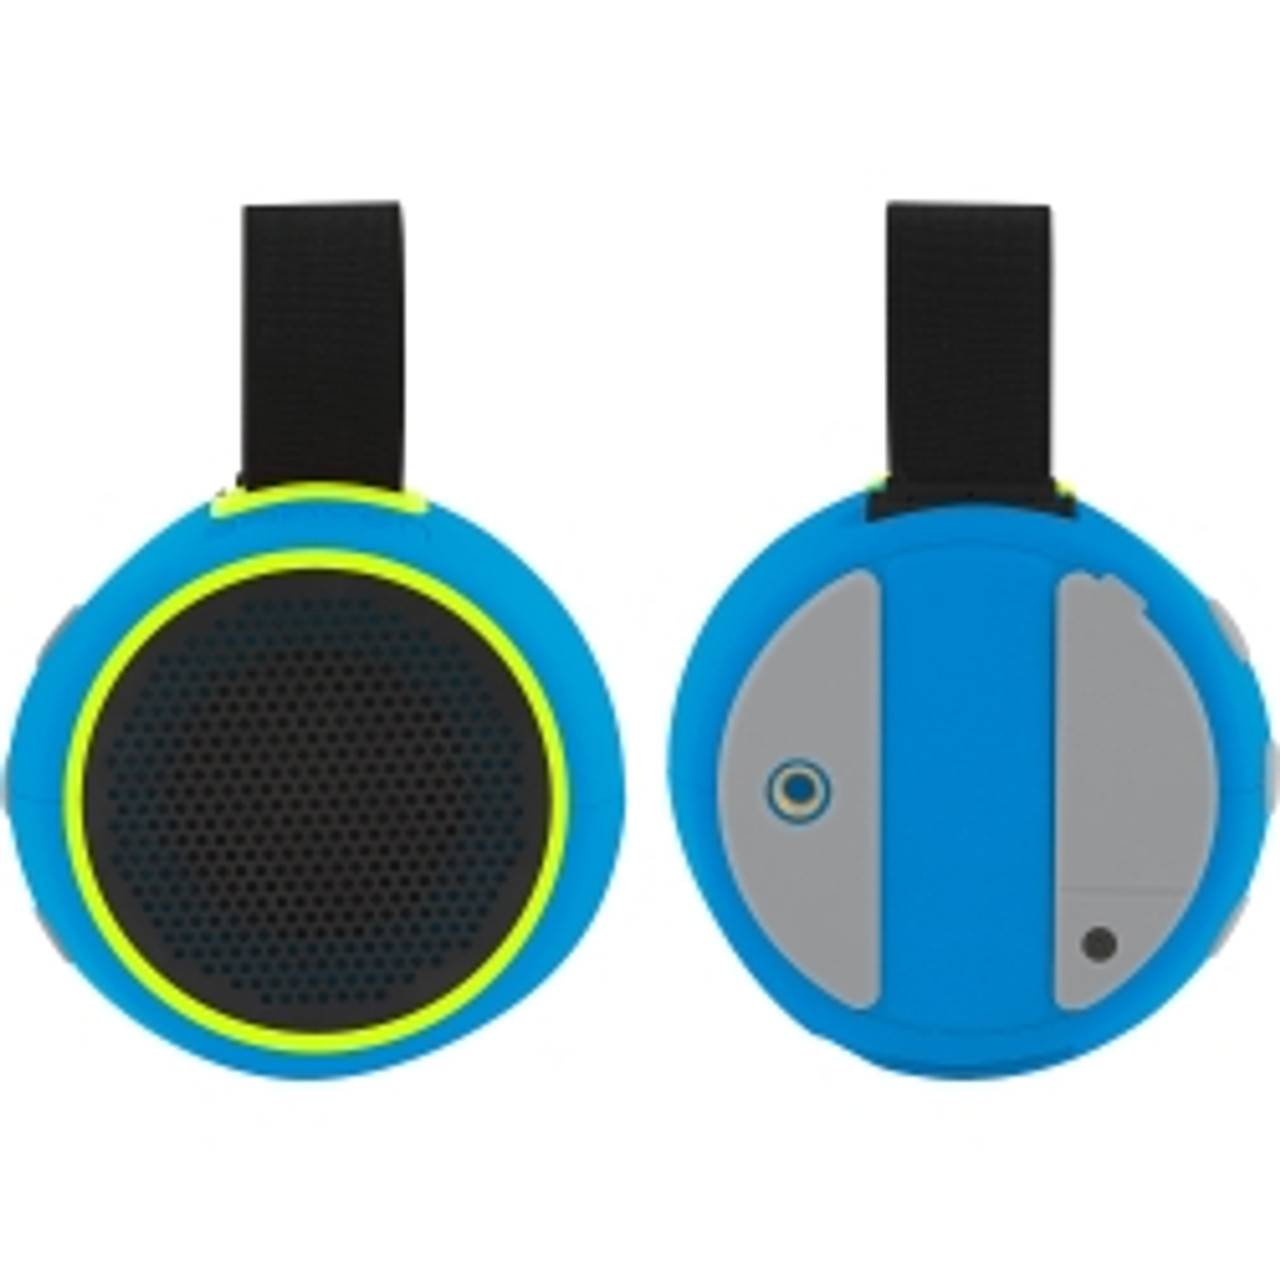 Buy Braven 105 Wireless Portable Bluetooth Speaker [Waterproof